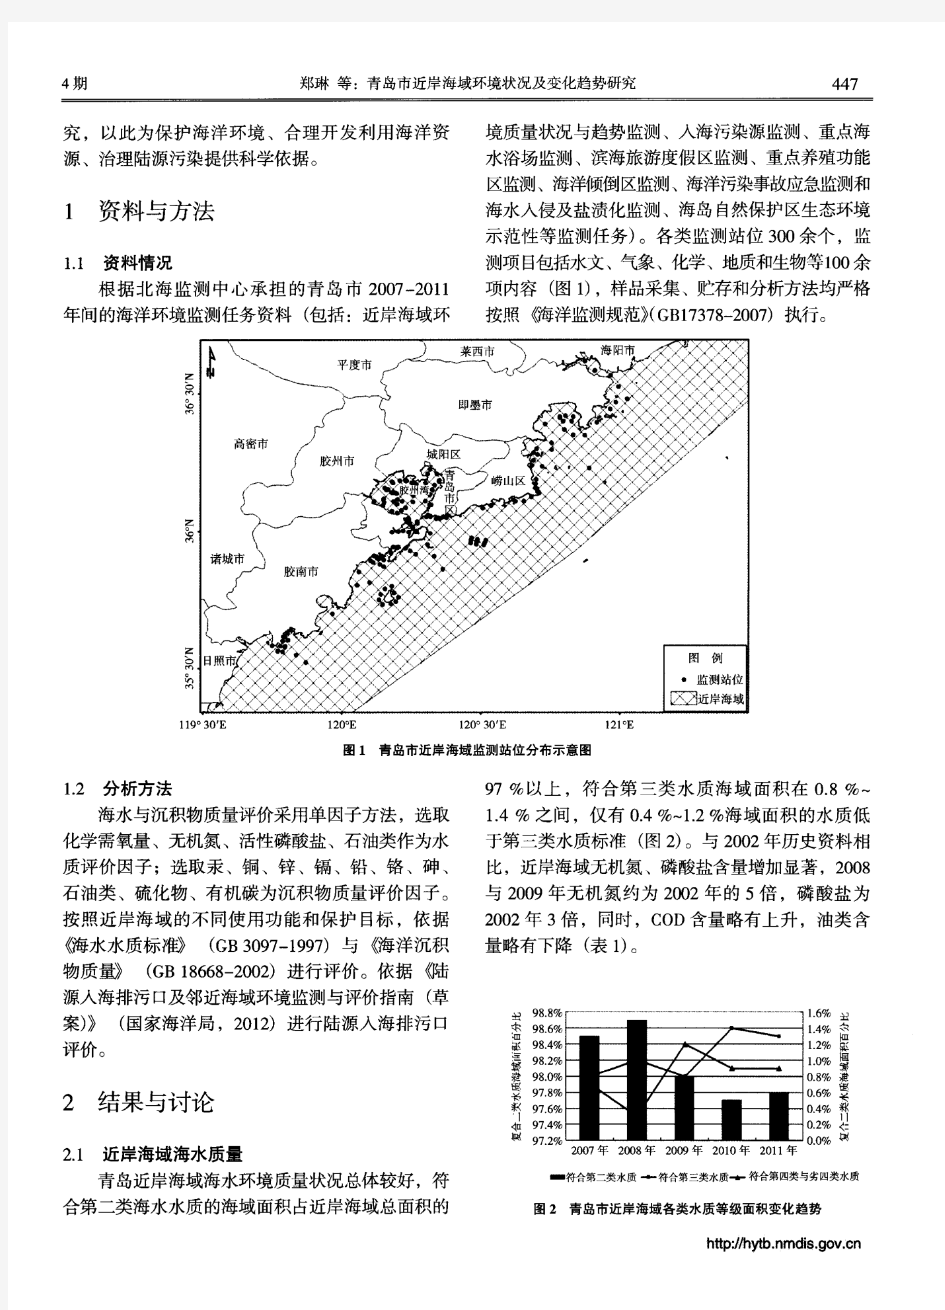 青岛市近岸海域环境状况及变化趋势研究